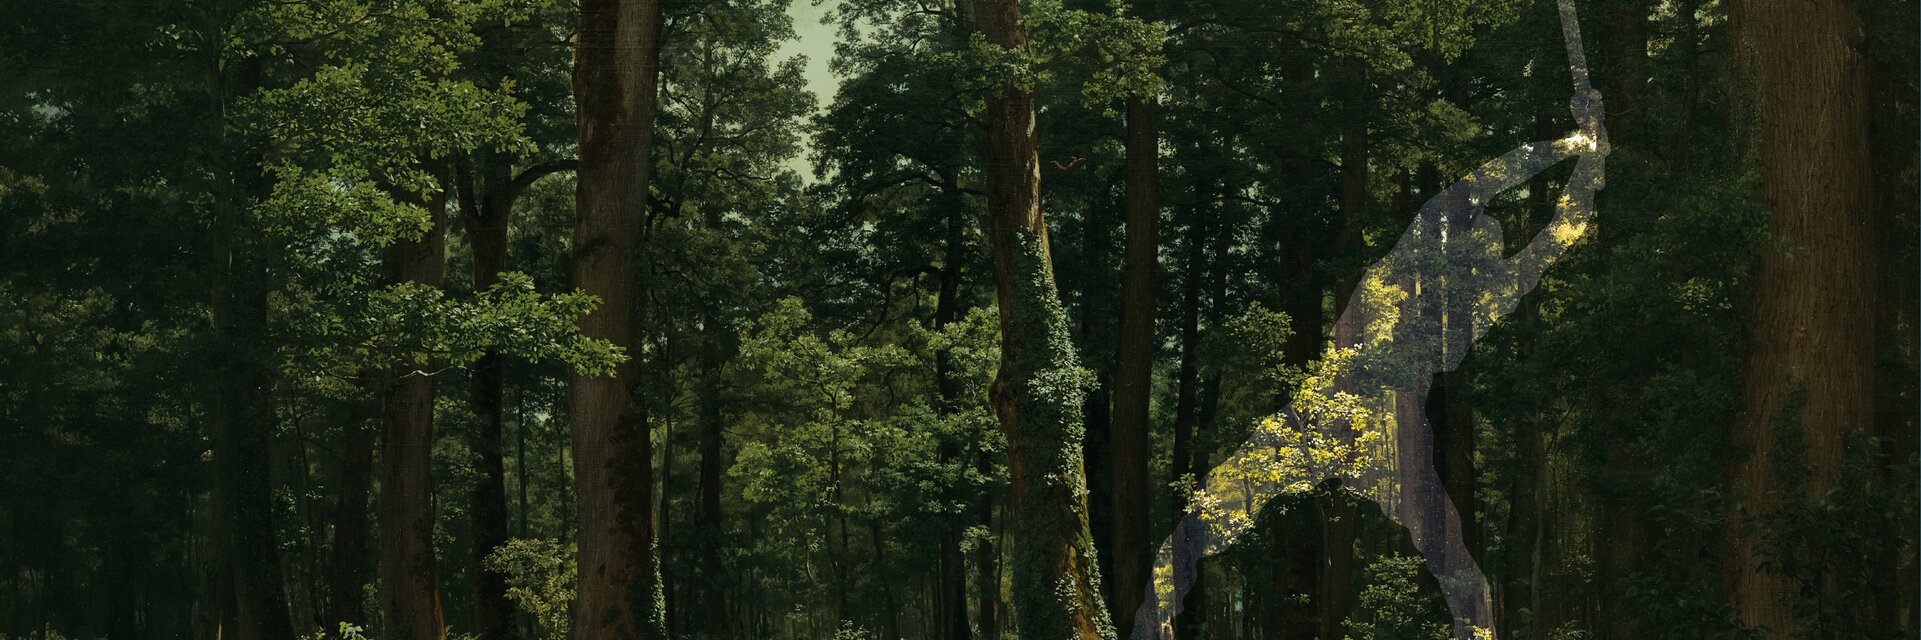 Visuale chiave della mostra "Nella foresta